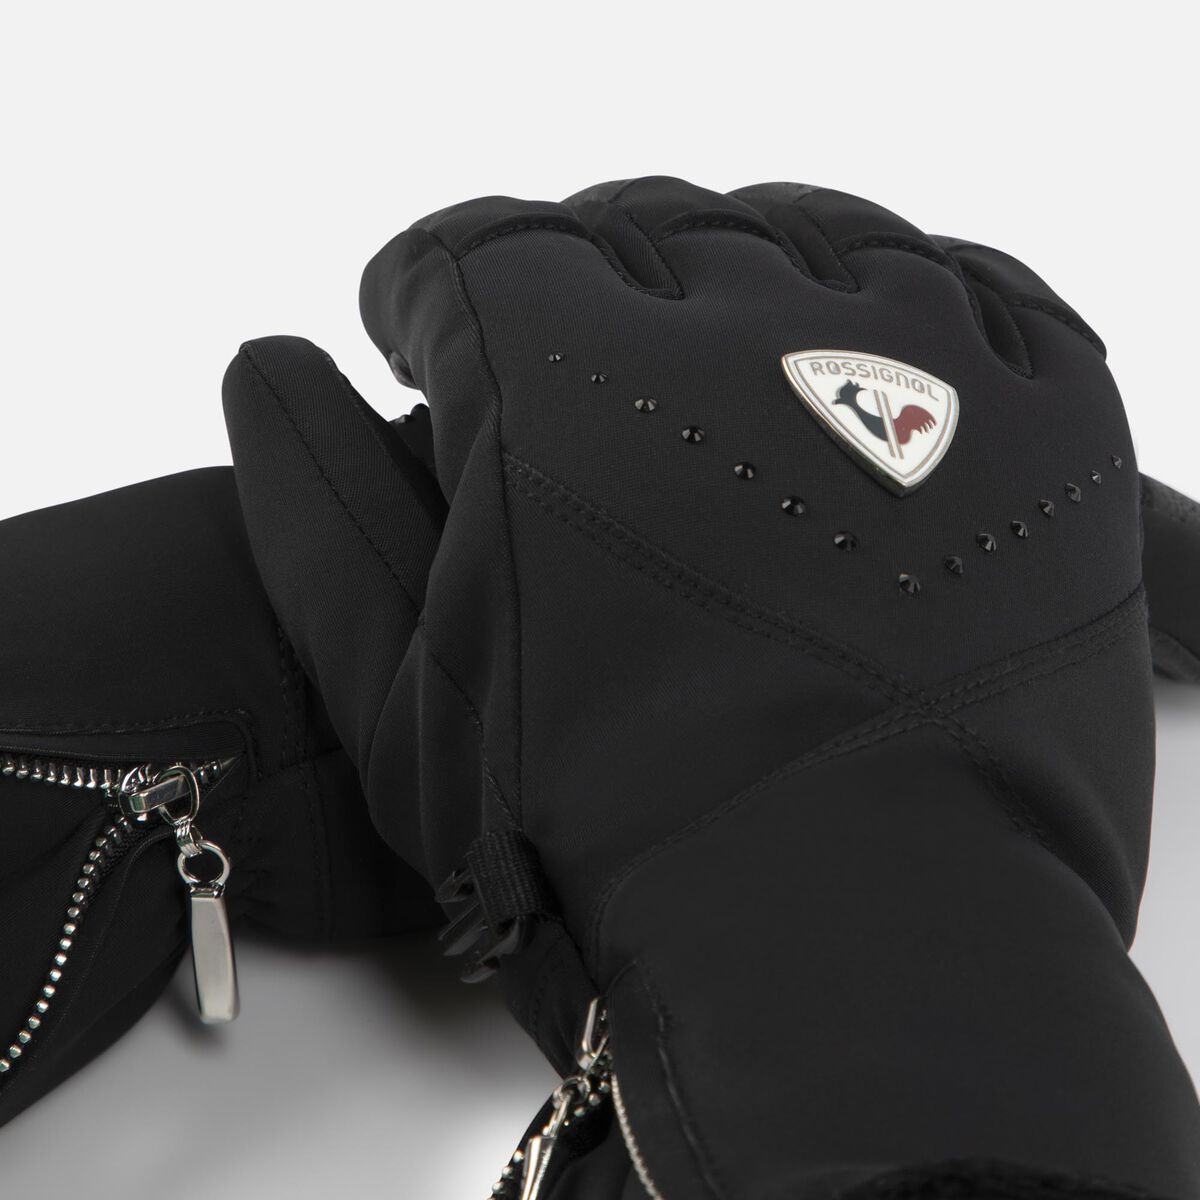 Women's Absolut waterproof ski gloves